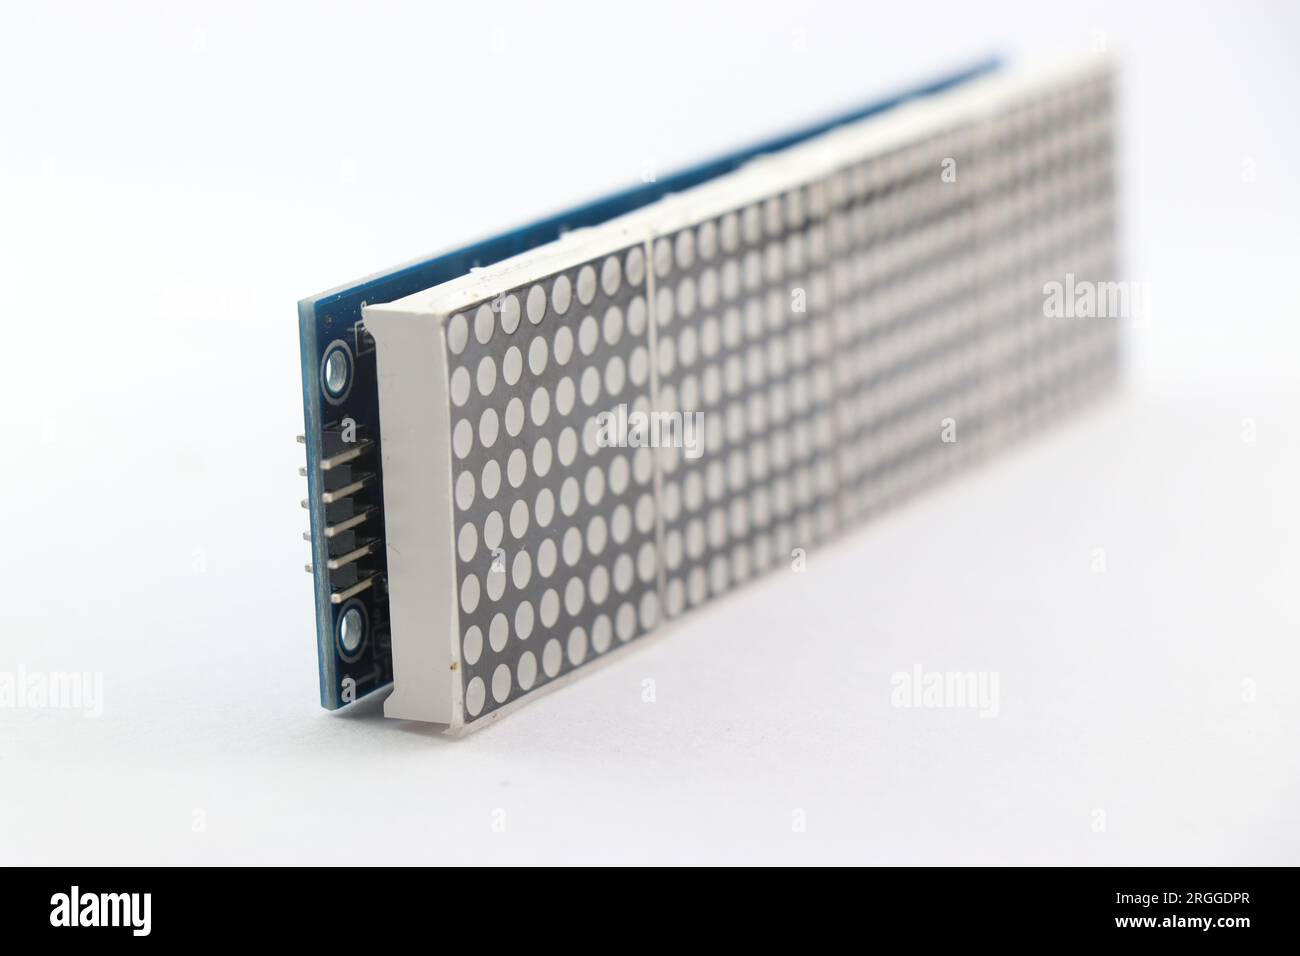 Vista dei pin dal display a matrice di punti a LED 8x64 che può essere interfacciato con microcontrollori programmabili Foto Stock